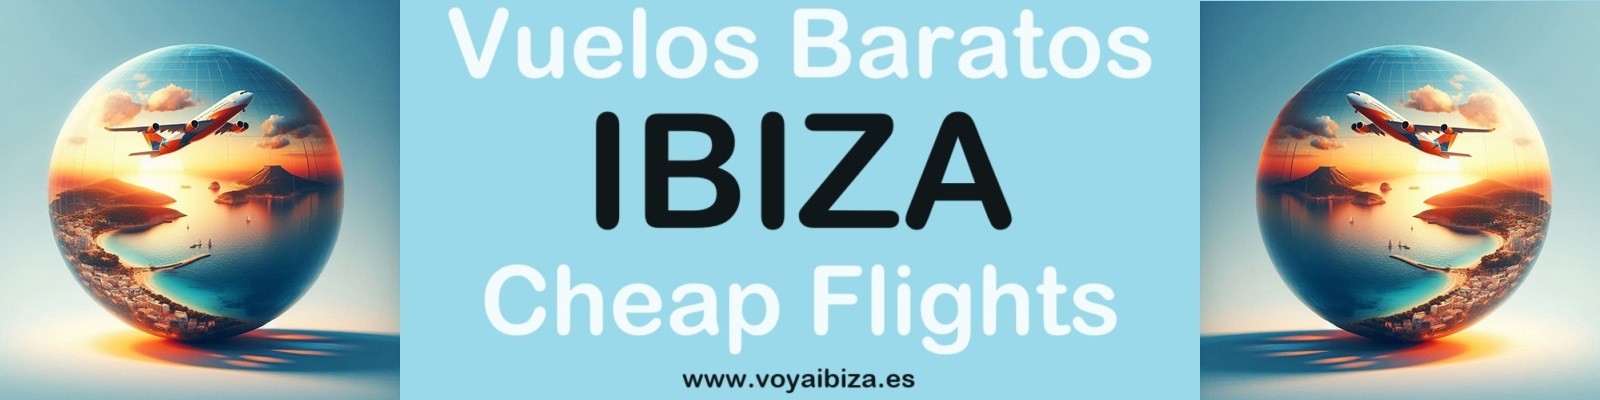 Vuelos Baratos a Ibiza. Cheap Flights to Ibiza